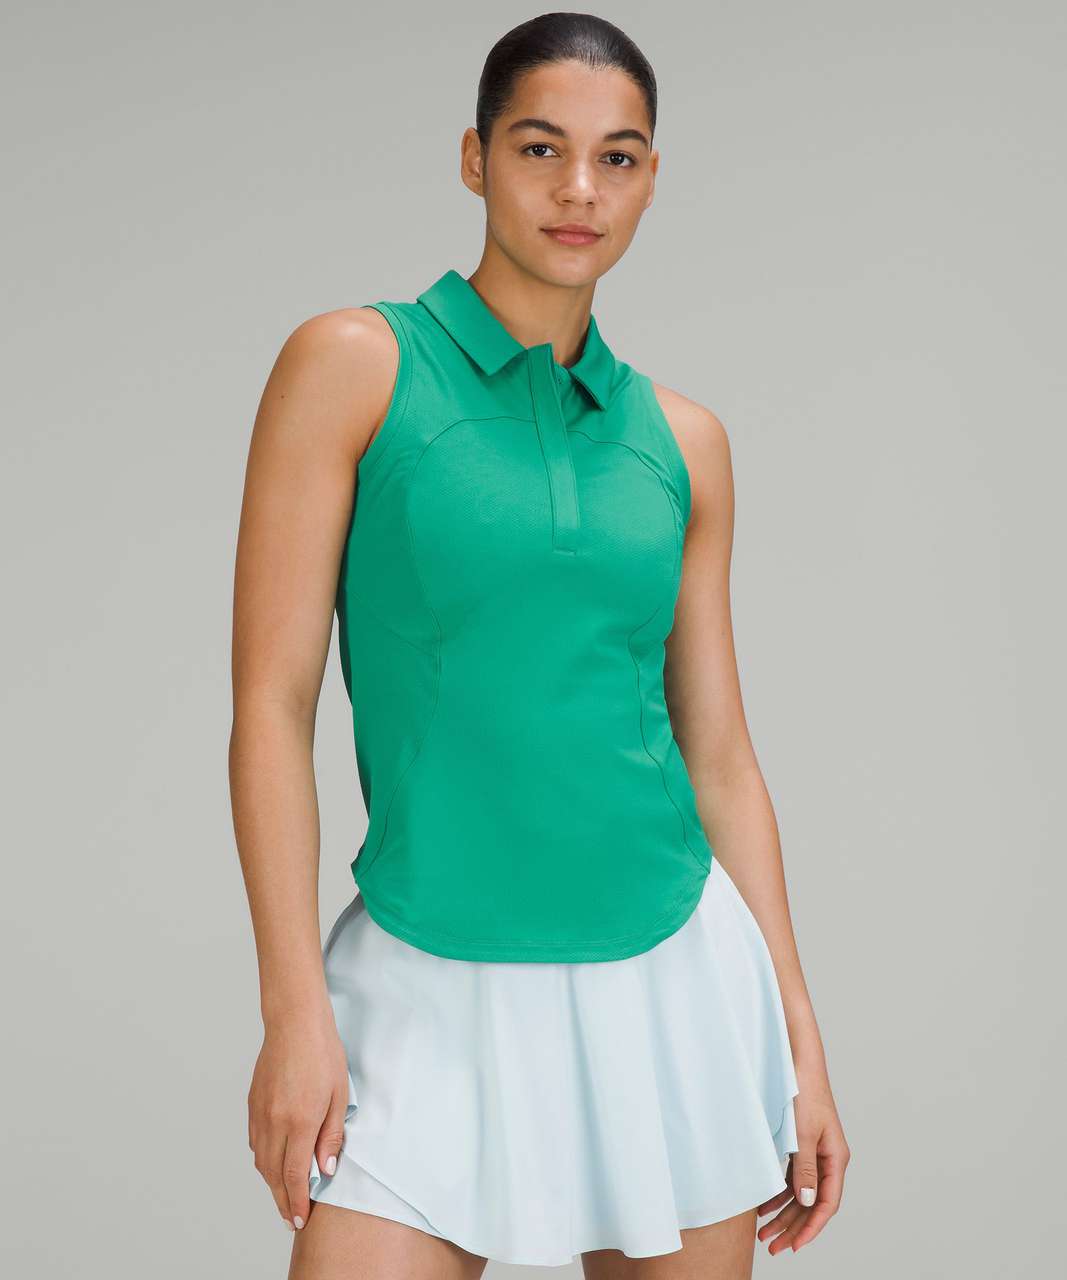 Lululemon Everlux Short-Lined Tennis Tank Top Dress 6 - Maldives Green -  lulu fanatics